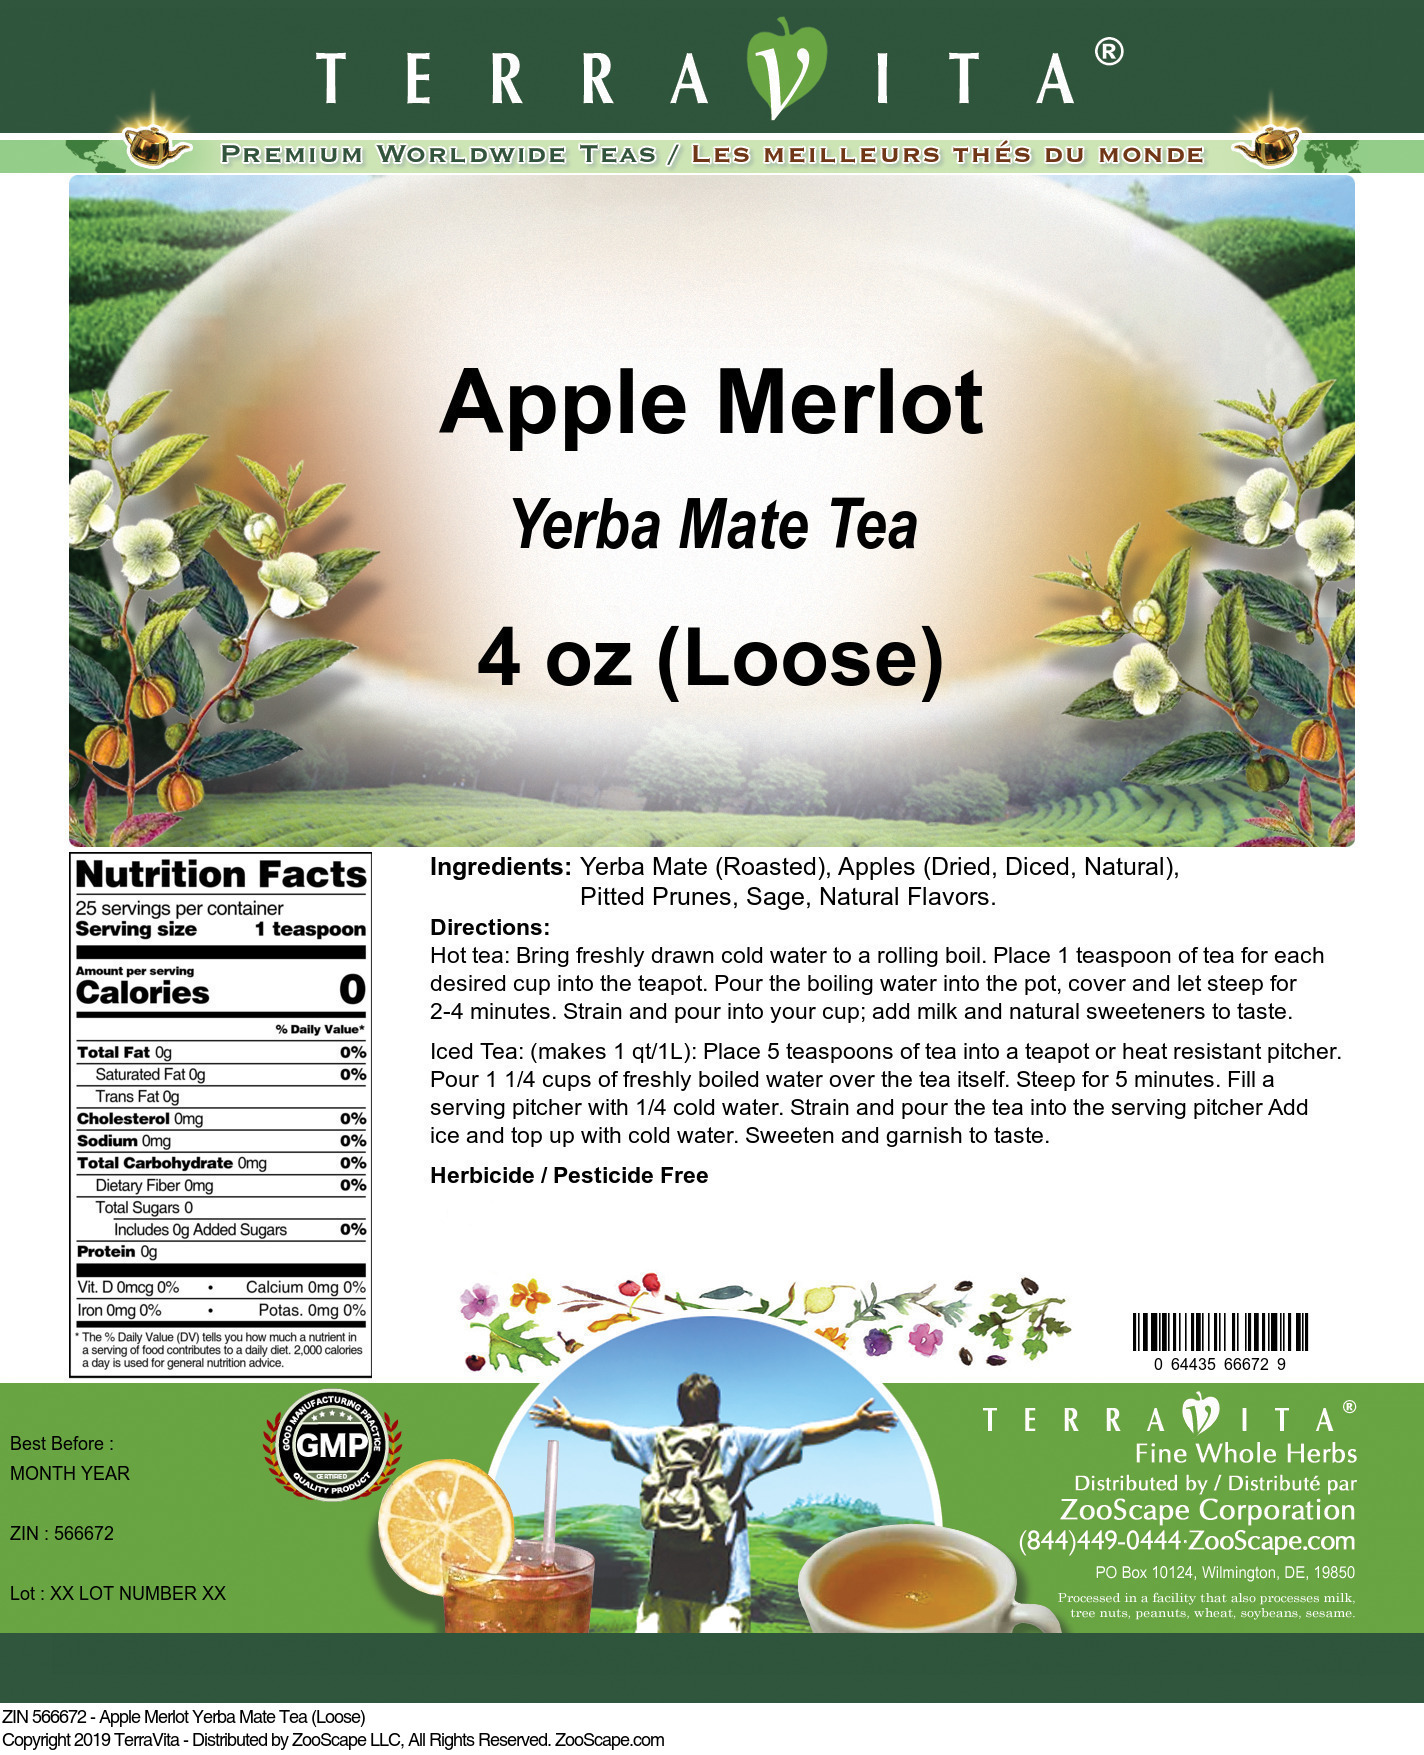 Apple Merlot Yerba Mate Tea (Loose) - Label